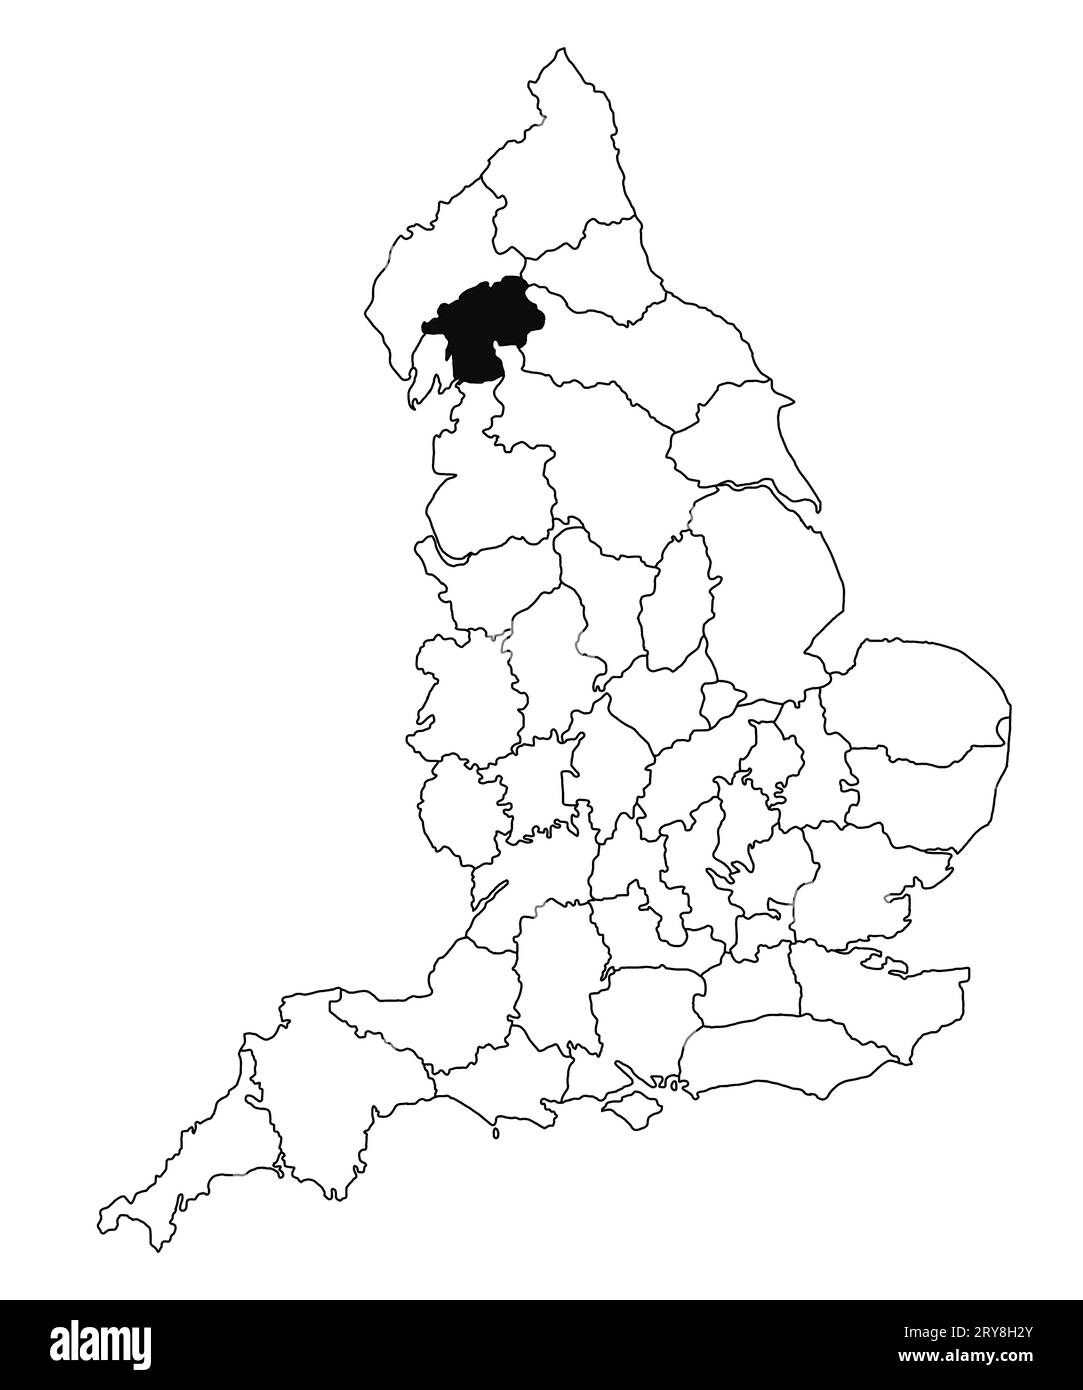 Carte du comté de Westmorland en Angleterre sur fond blanc. Carte du comté unique mise en évidence en noir sur la carte administrative de l'Angleterre.. Royaume-Uni Banque D'Images